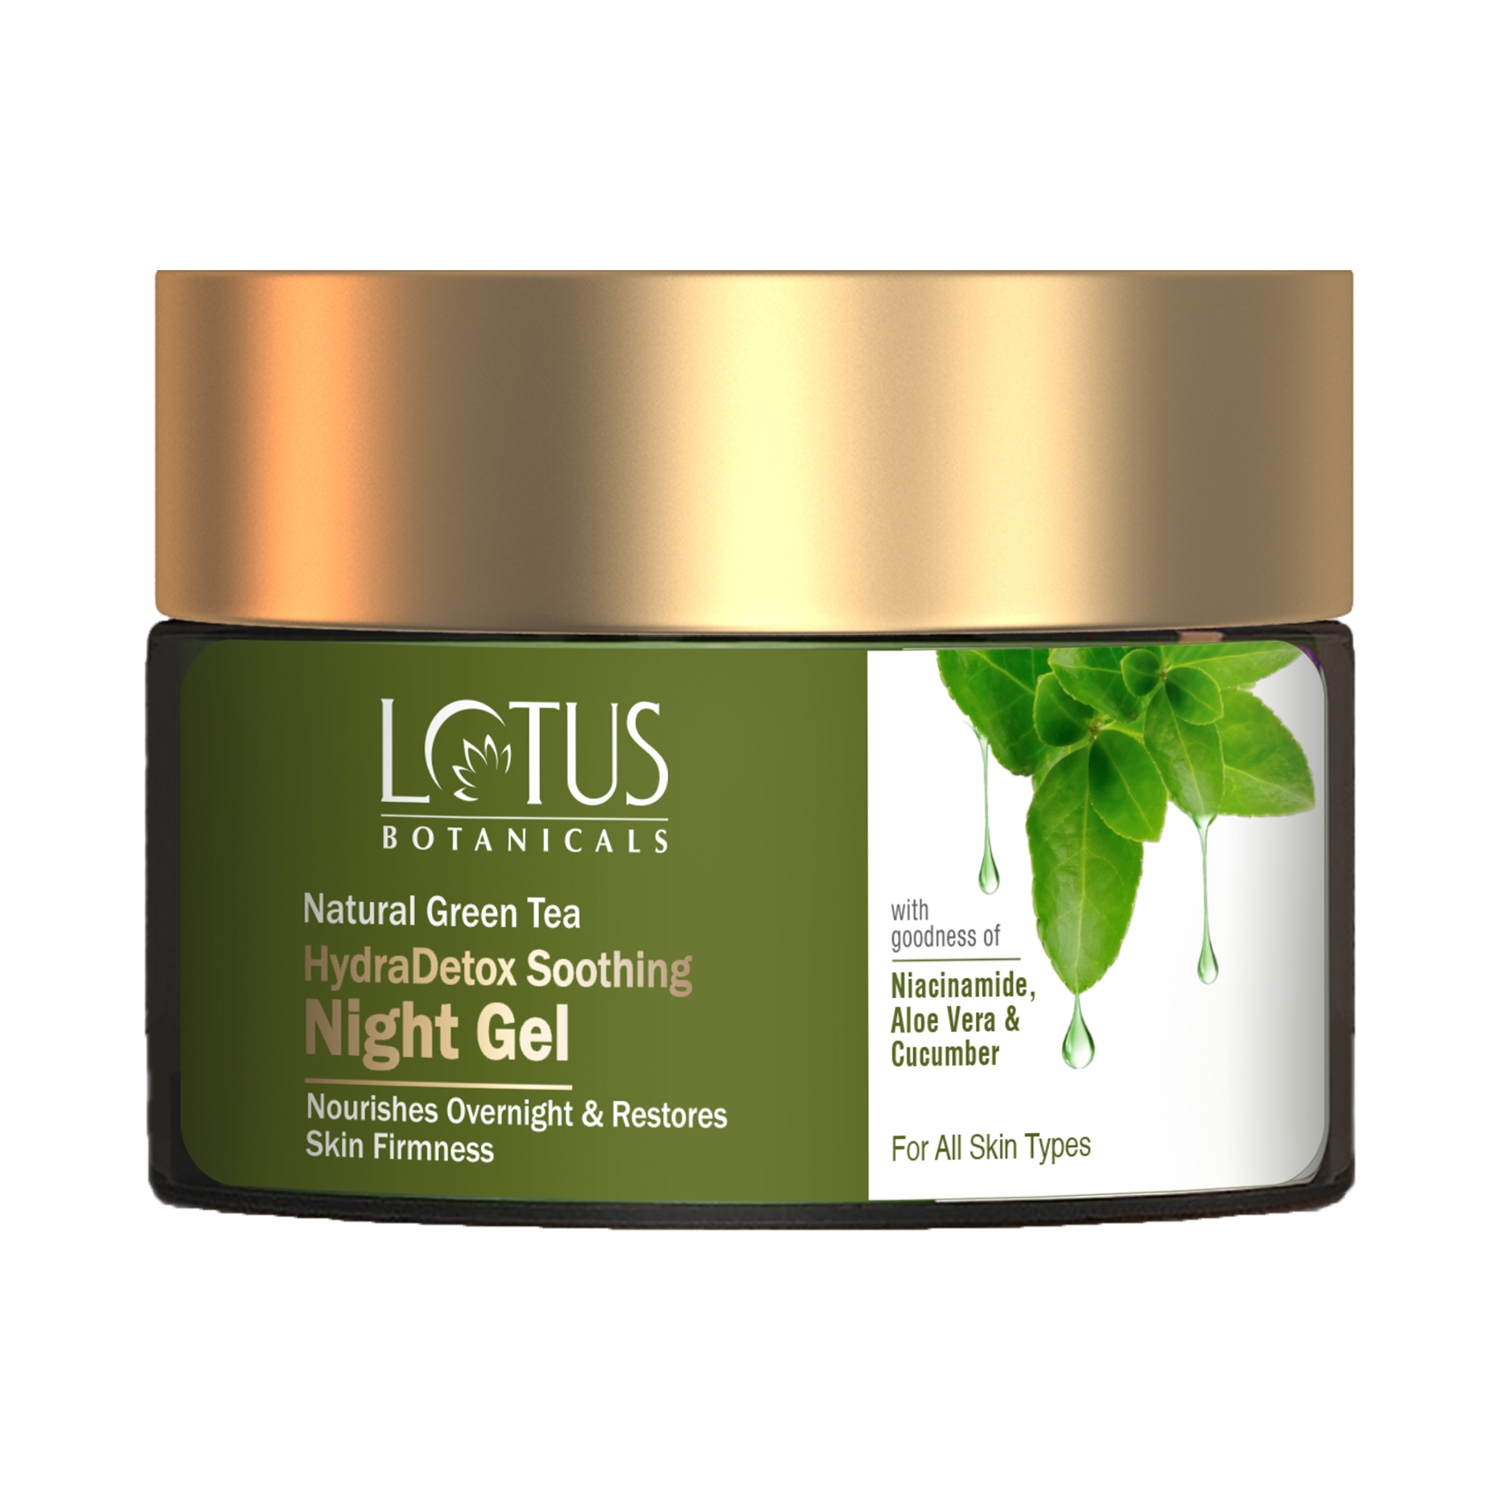 Lotus Botanicals Natural Green Tea Hydradetox Soothing Night Gel (50g)